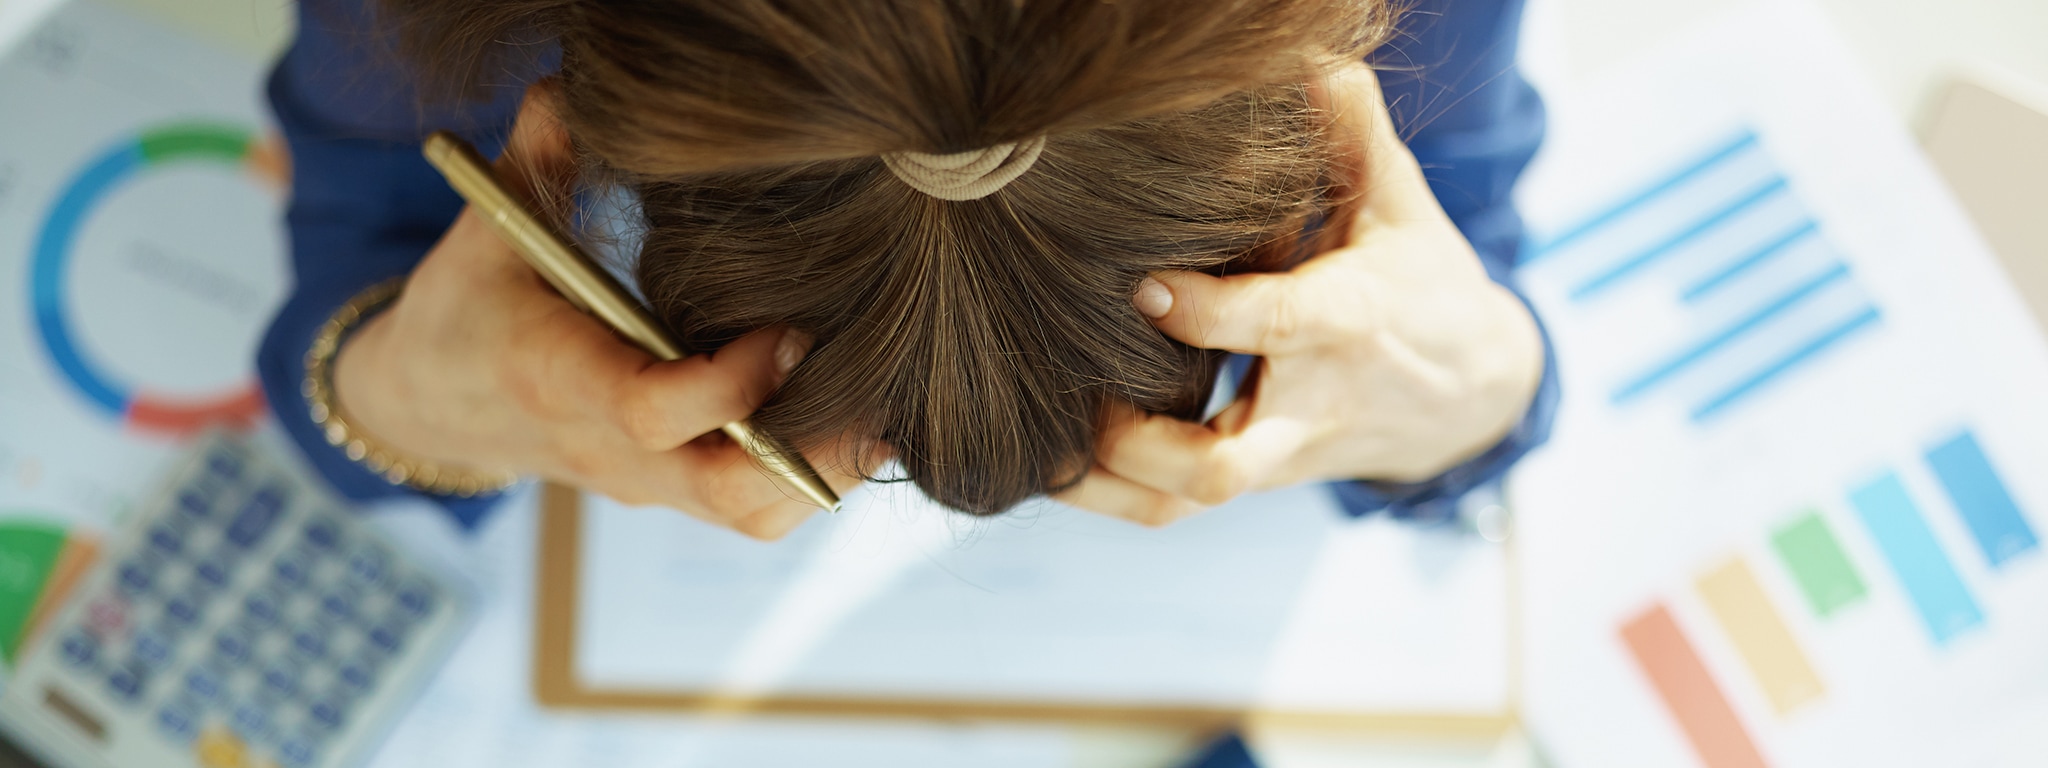 Síndrome de burnout: o que é e sintomas